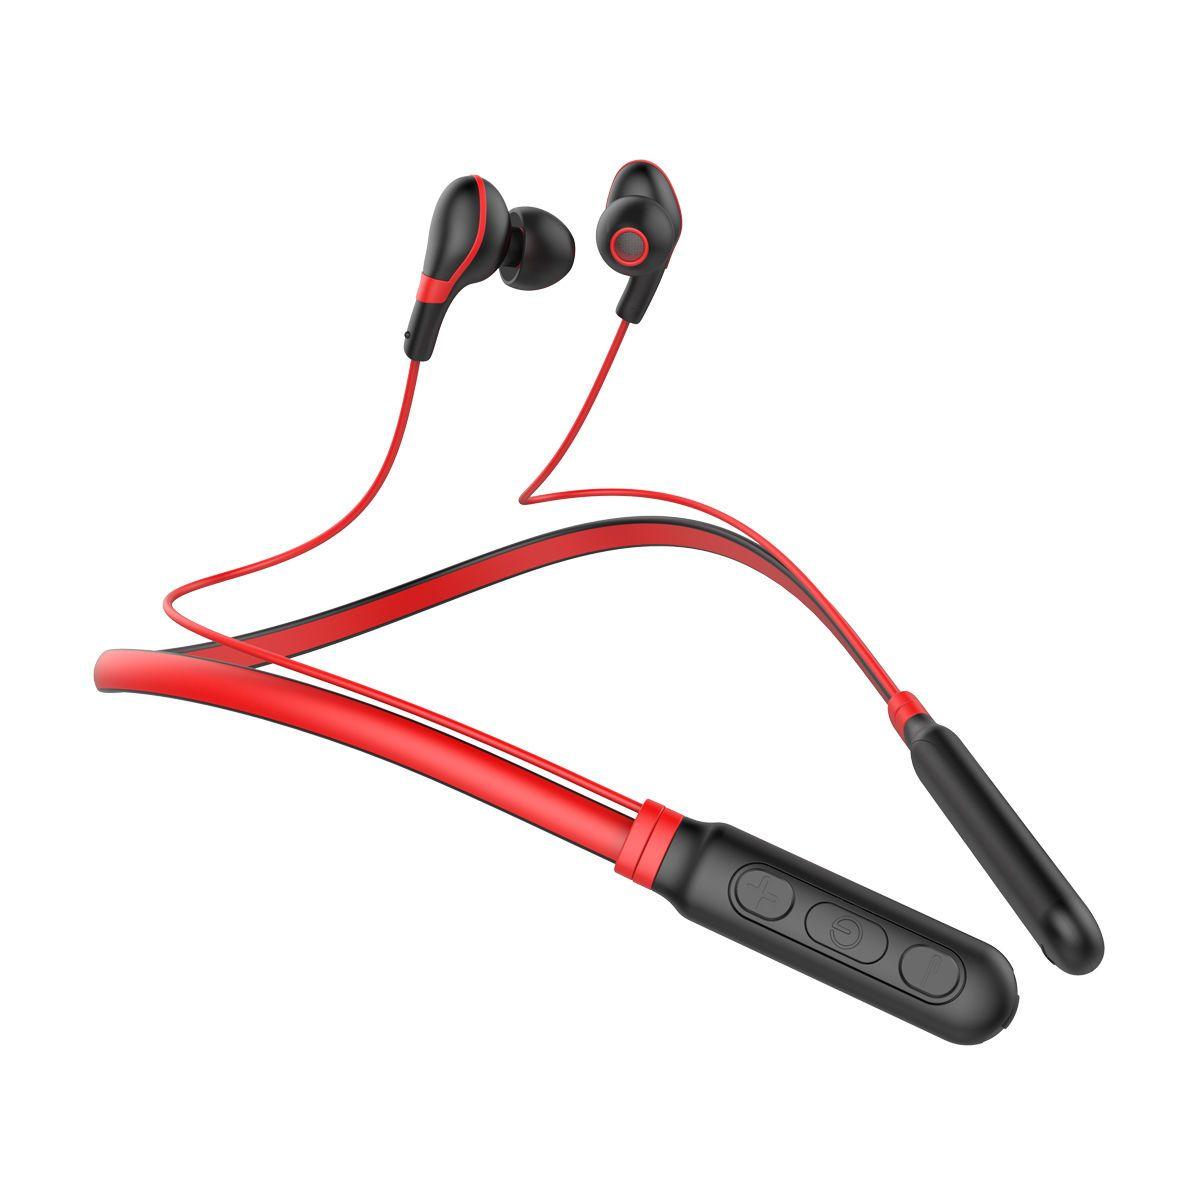 Sluchátka Baseus & Encok Bluetooth E16 černo - červené